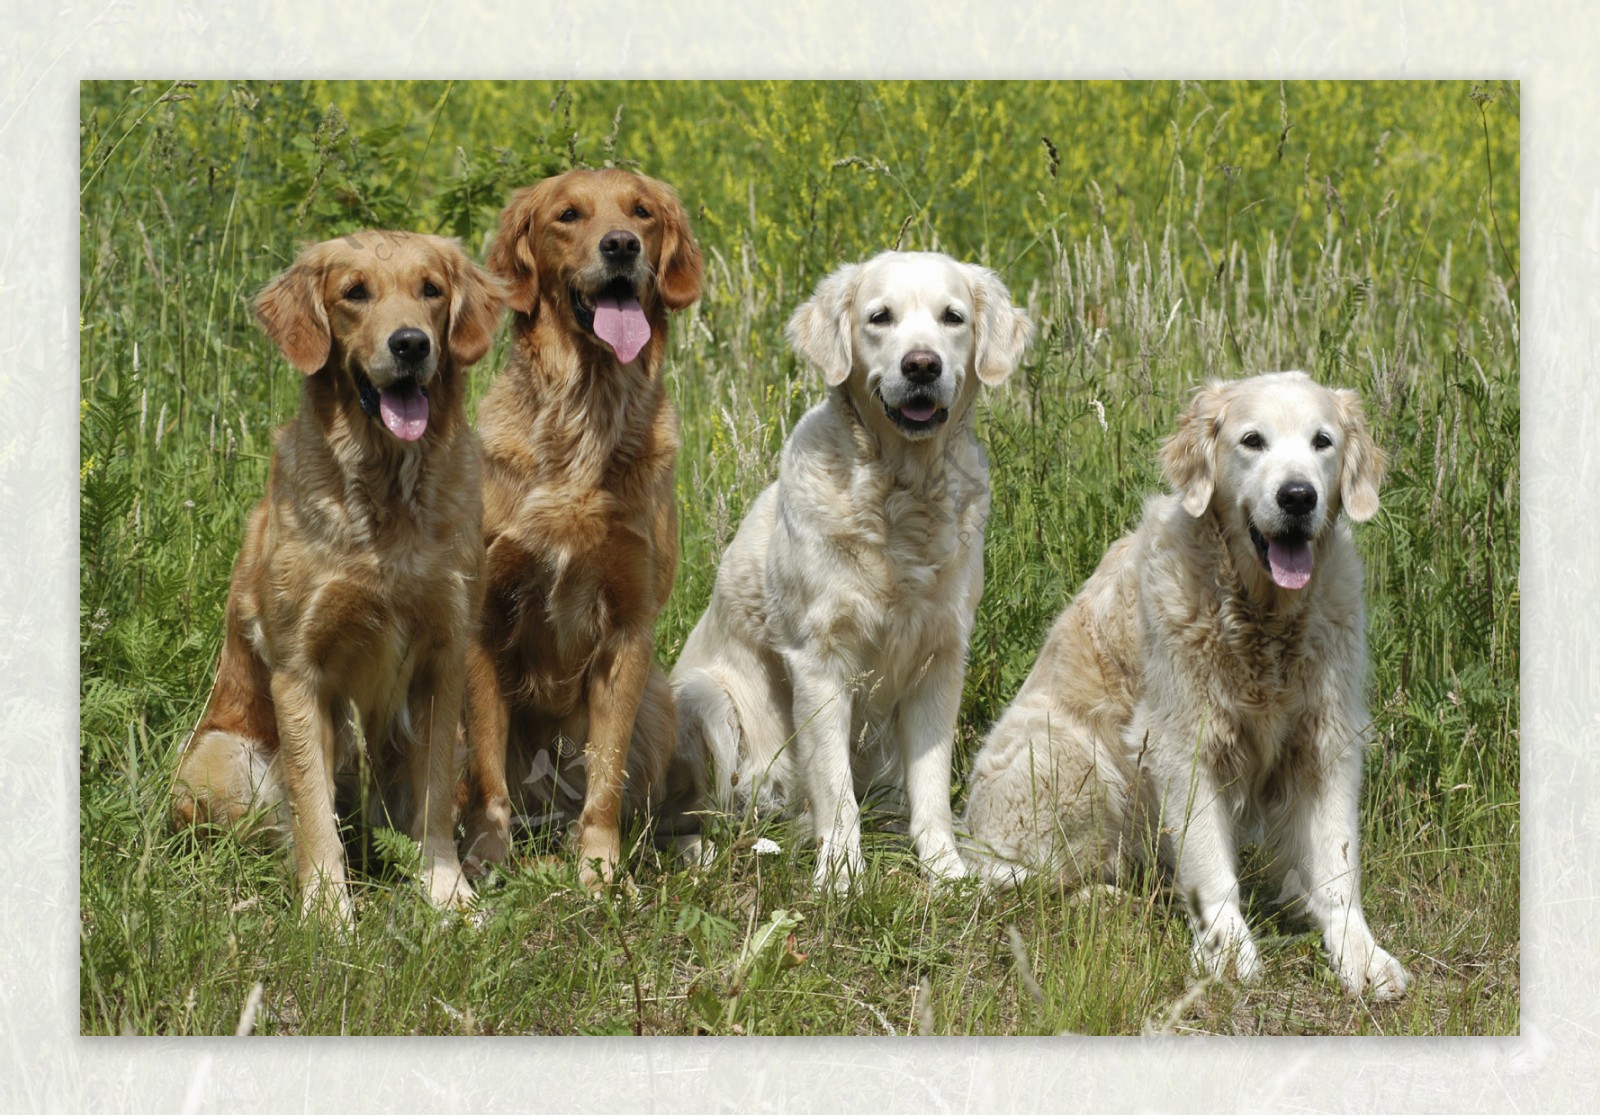 立在草地上的四只宠物狗图片